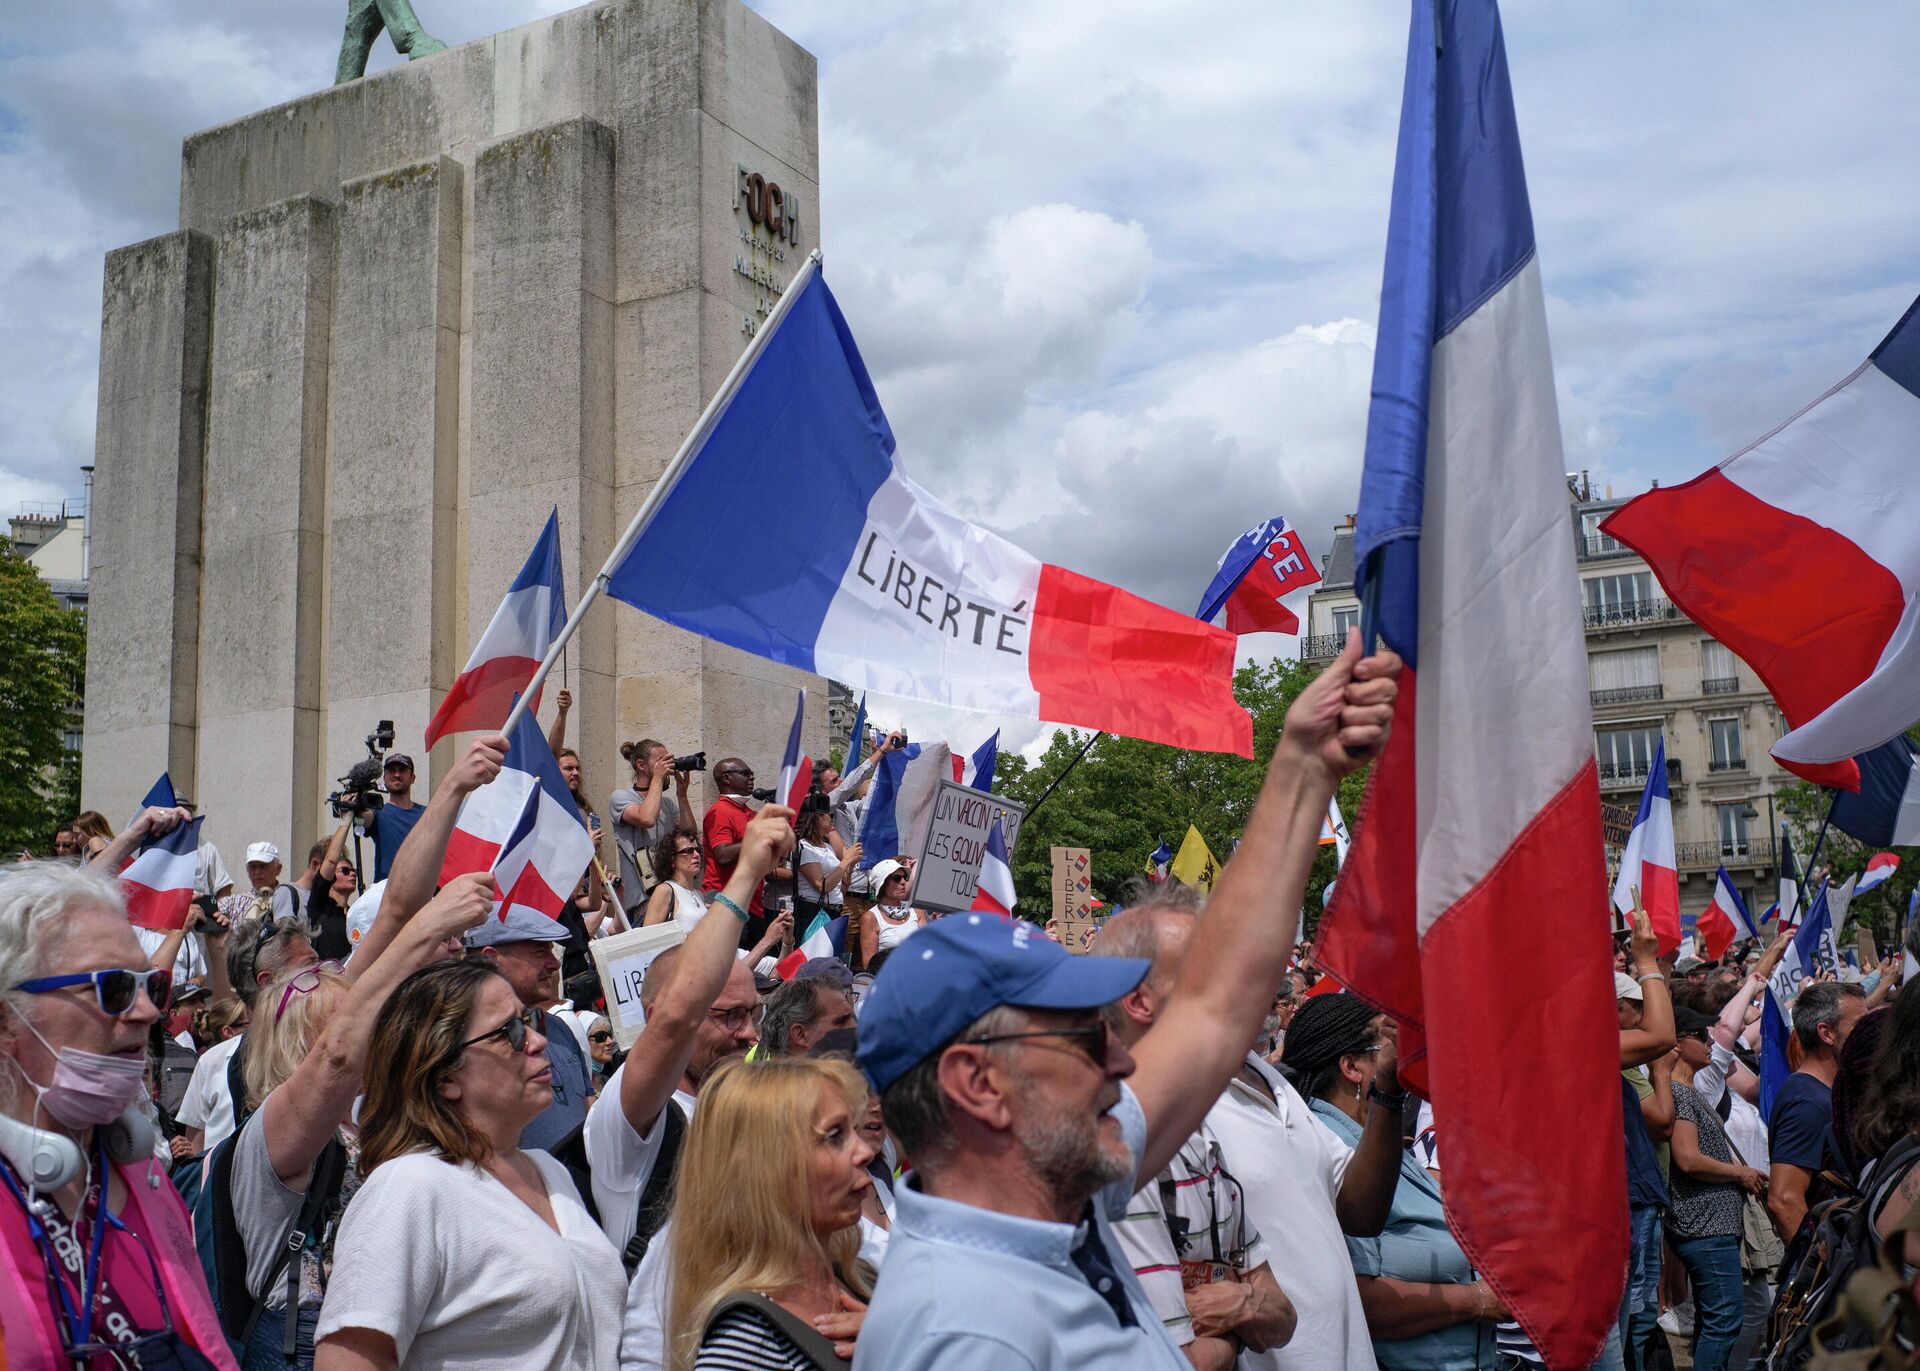 Miles de manifestantes se reúnen en la Plaza del Trocadero cerca de la Torre Eiffel para protestar contra pases sanitarios en París, Francia, el 24 de julio de 2021 - Sputnik Mundo, 1920, 25.07.2021